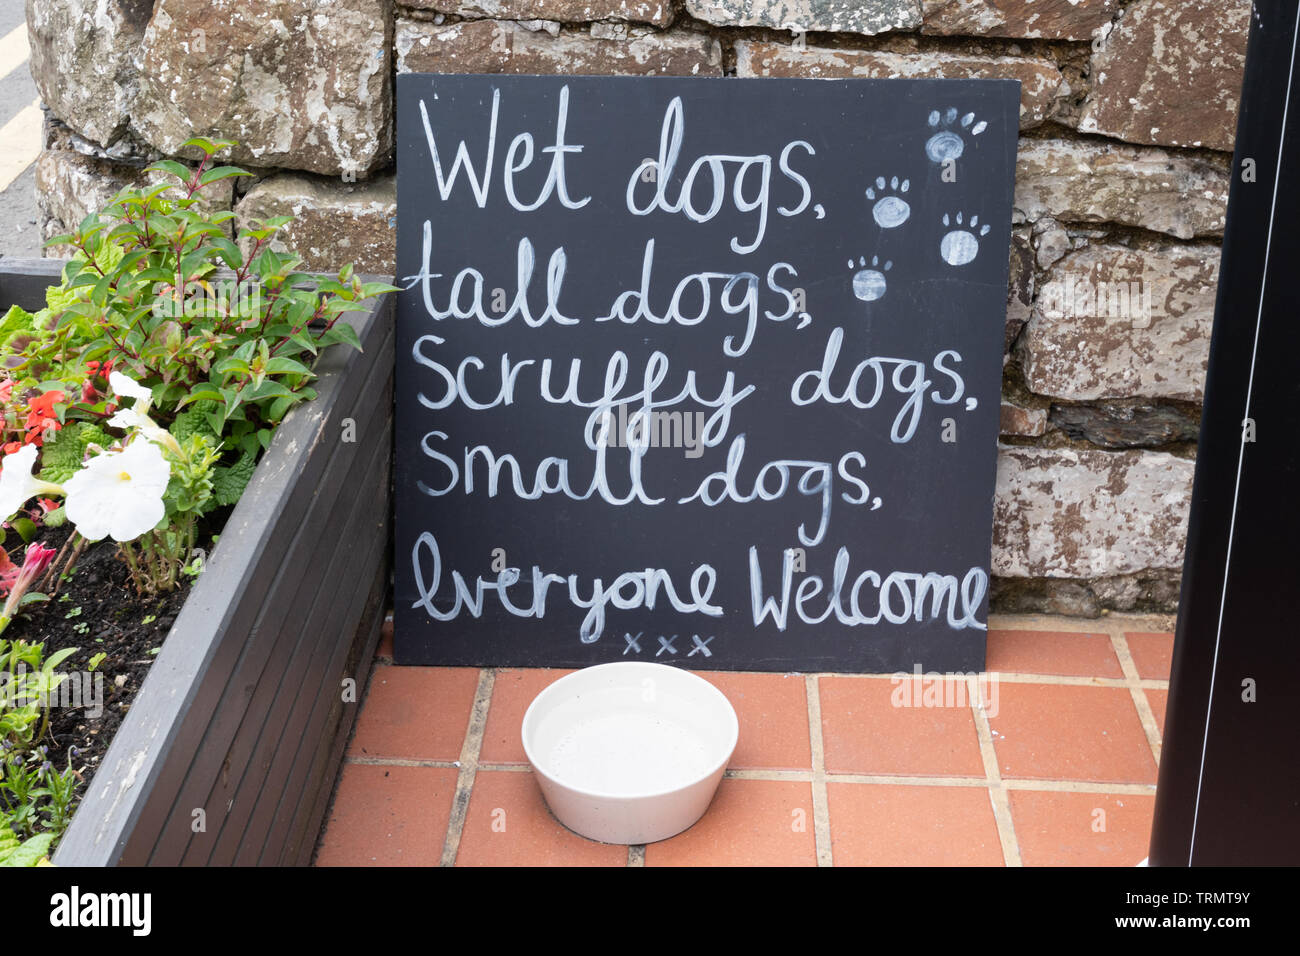 Un signe extérieur amusant de thé gallois : chiens mouillés, grands chiens, chiens, petits chiens hirsute, bienvenue à tous, avec un chien de la cuvette d'eau Banque D'Images